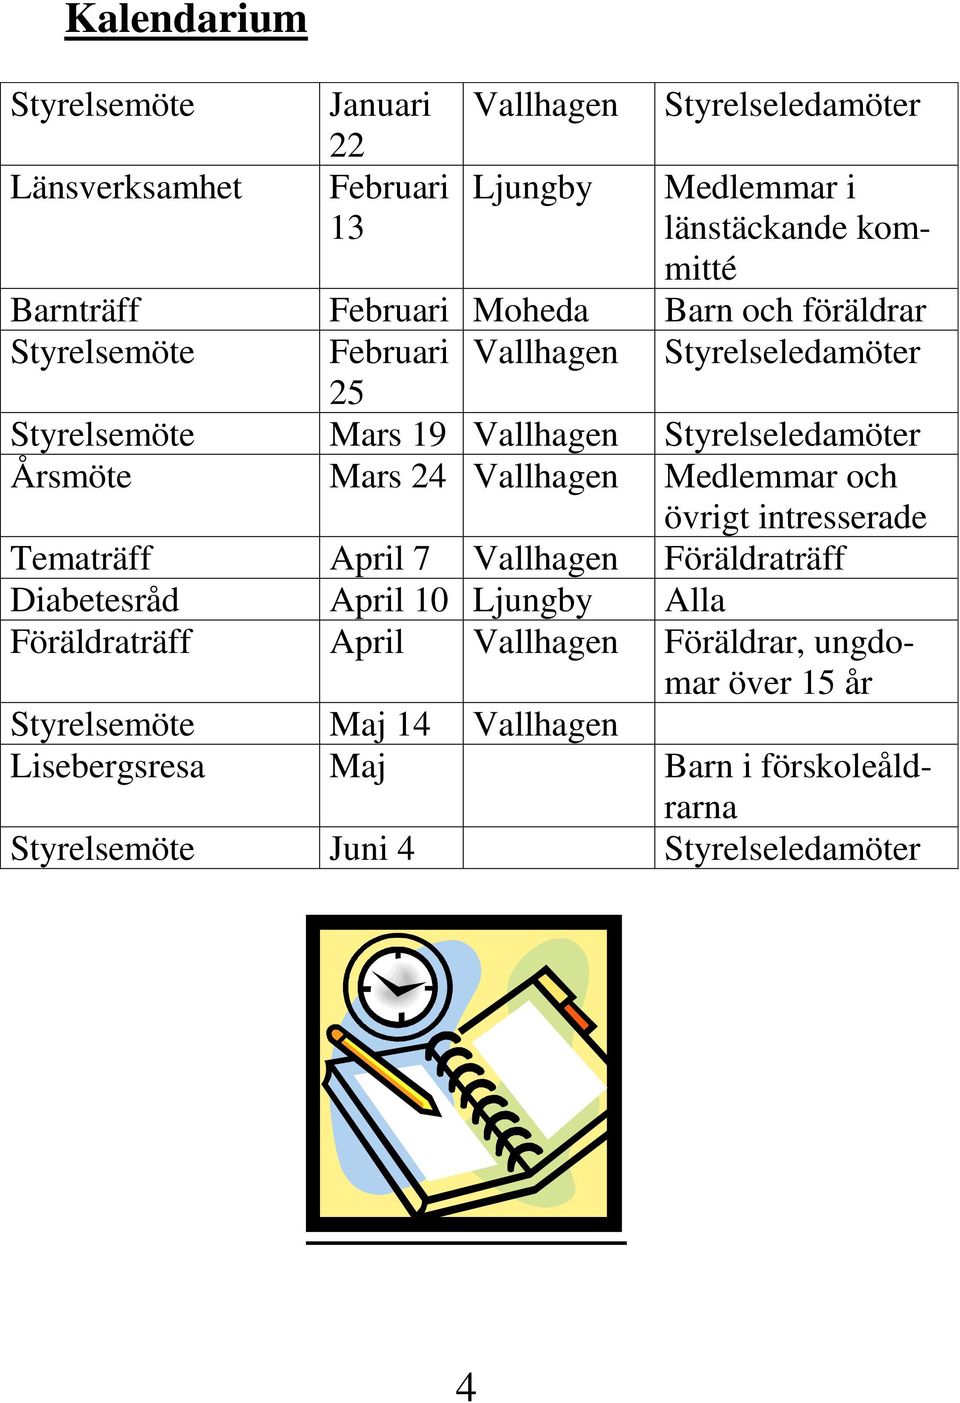 Mars 24 Vallhagen Medlemmar och övrigt intresserade Tematräff April 7 Vallhagen Föräldraträff Diabetesråd April 10 Ljungby Alla Föräldraträff